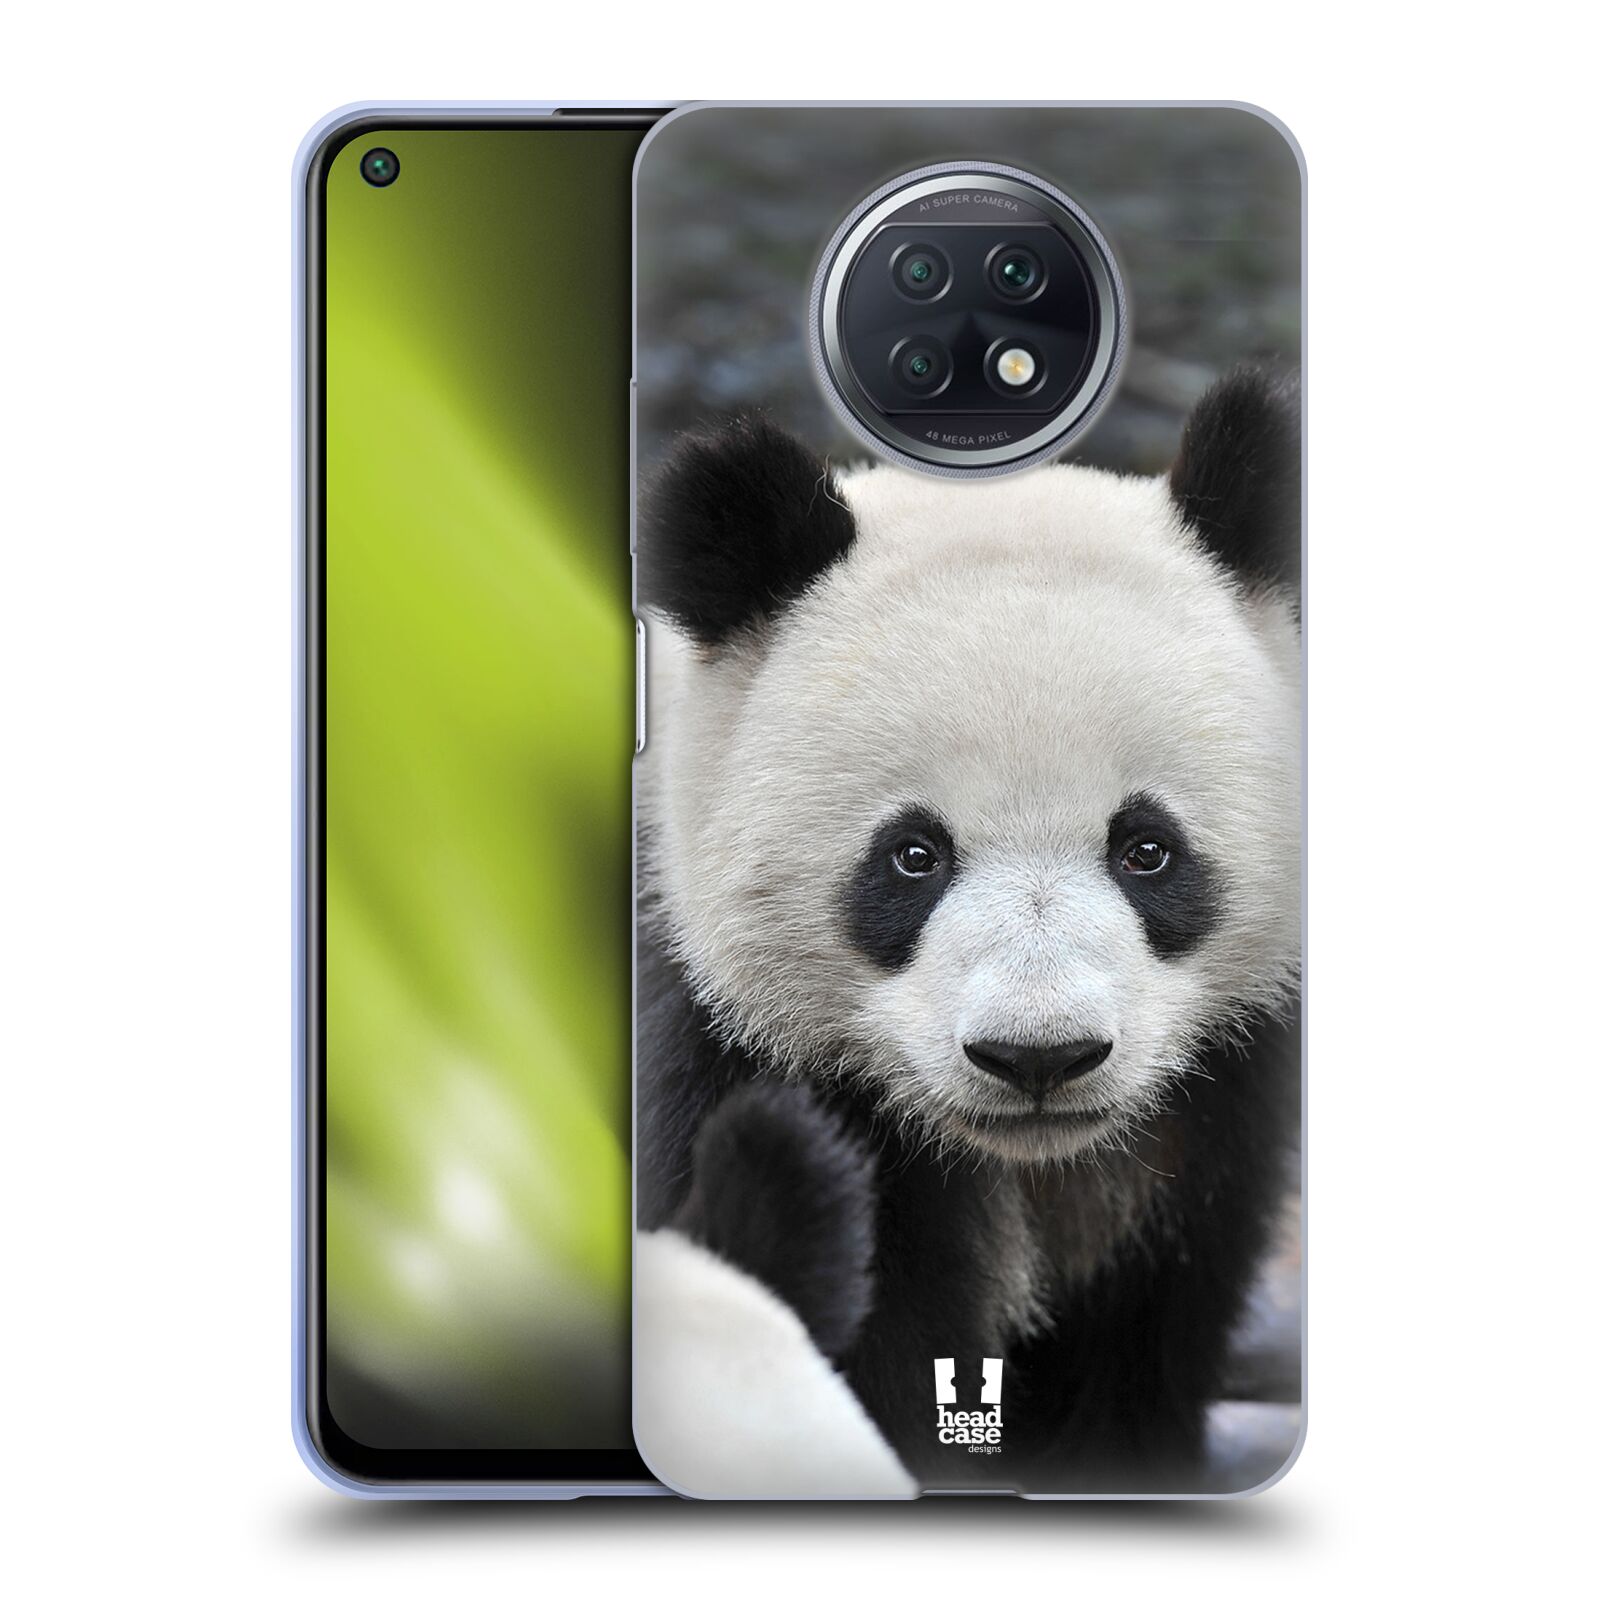 Plastový obal HEAD CASE na mobil Xiaomi Redmi Note 9T vzor Divočina, Divoký život a zvířata foto MEDVĚD PANDA